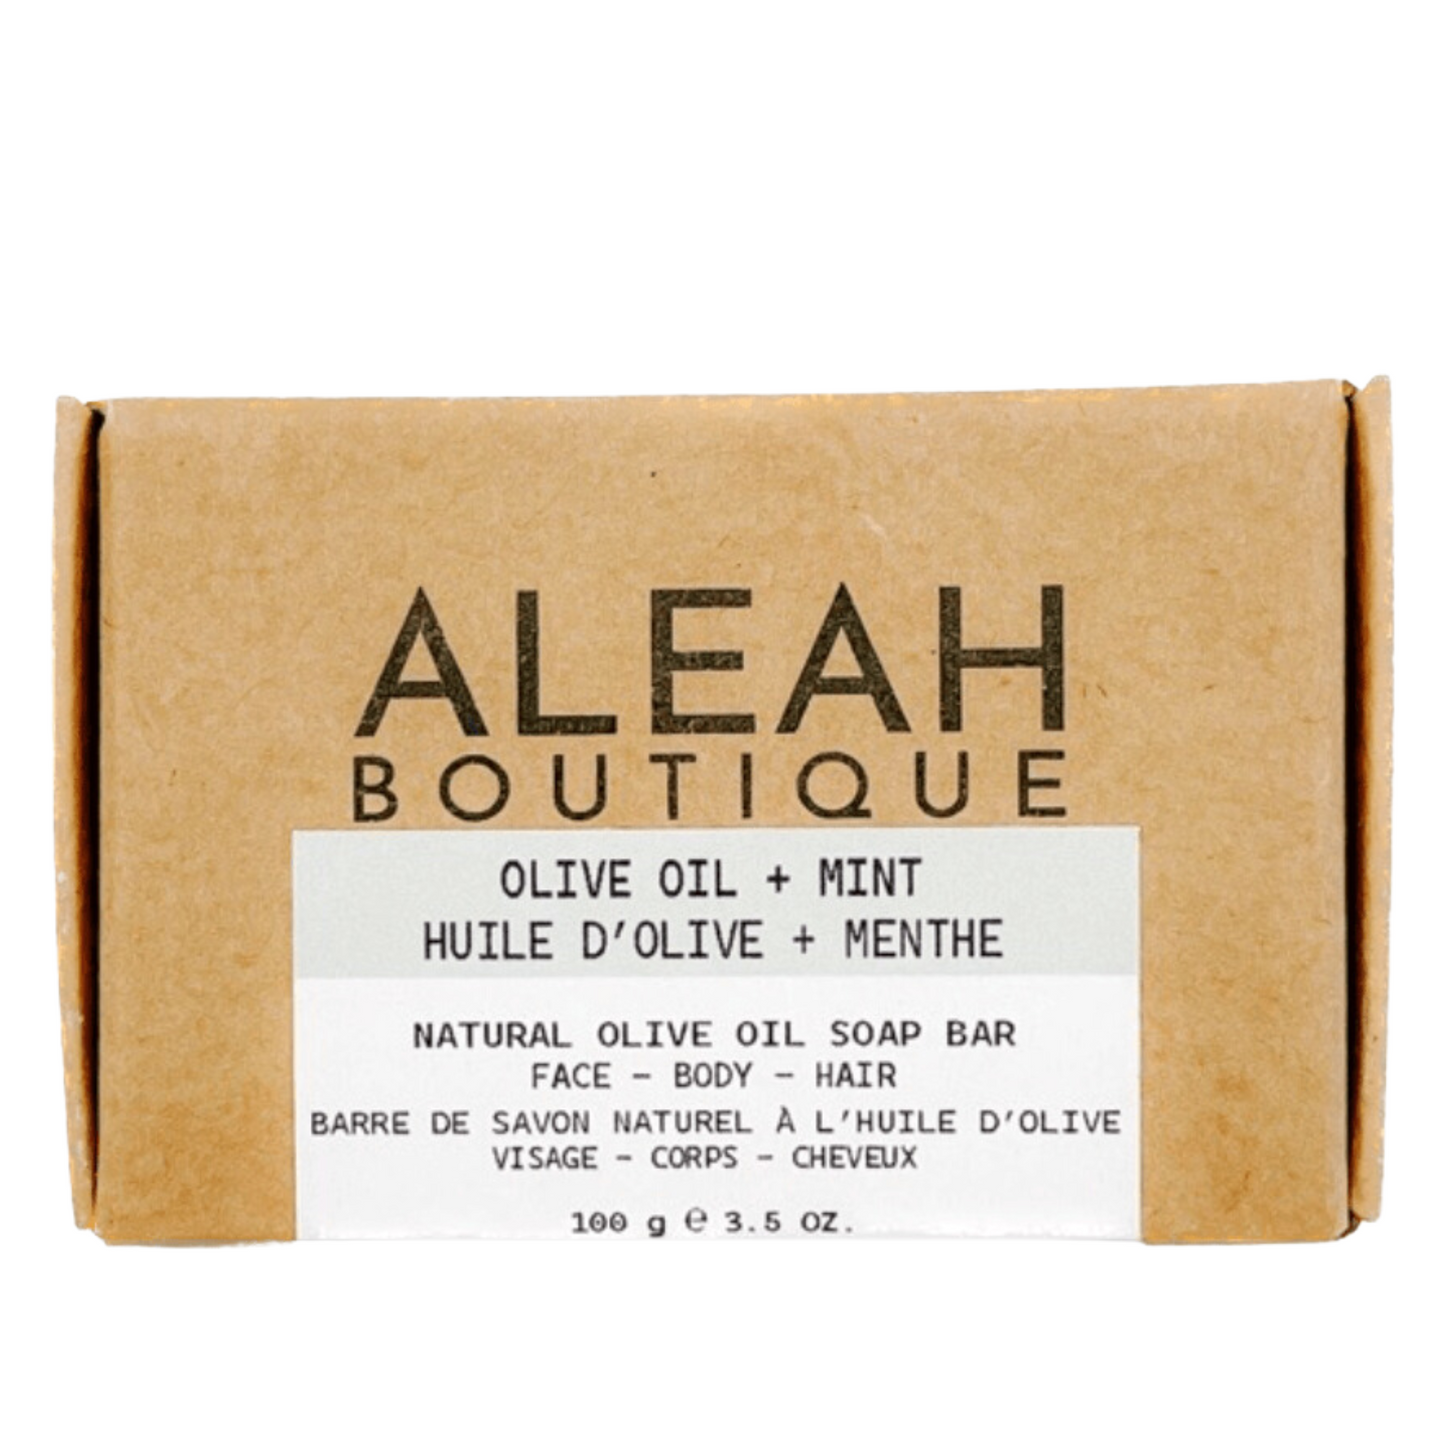 Olive Oil + Mint Soap Bar - Aleah's Boutique